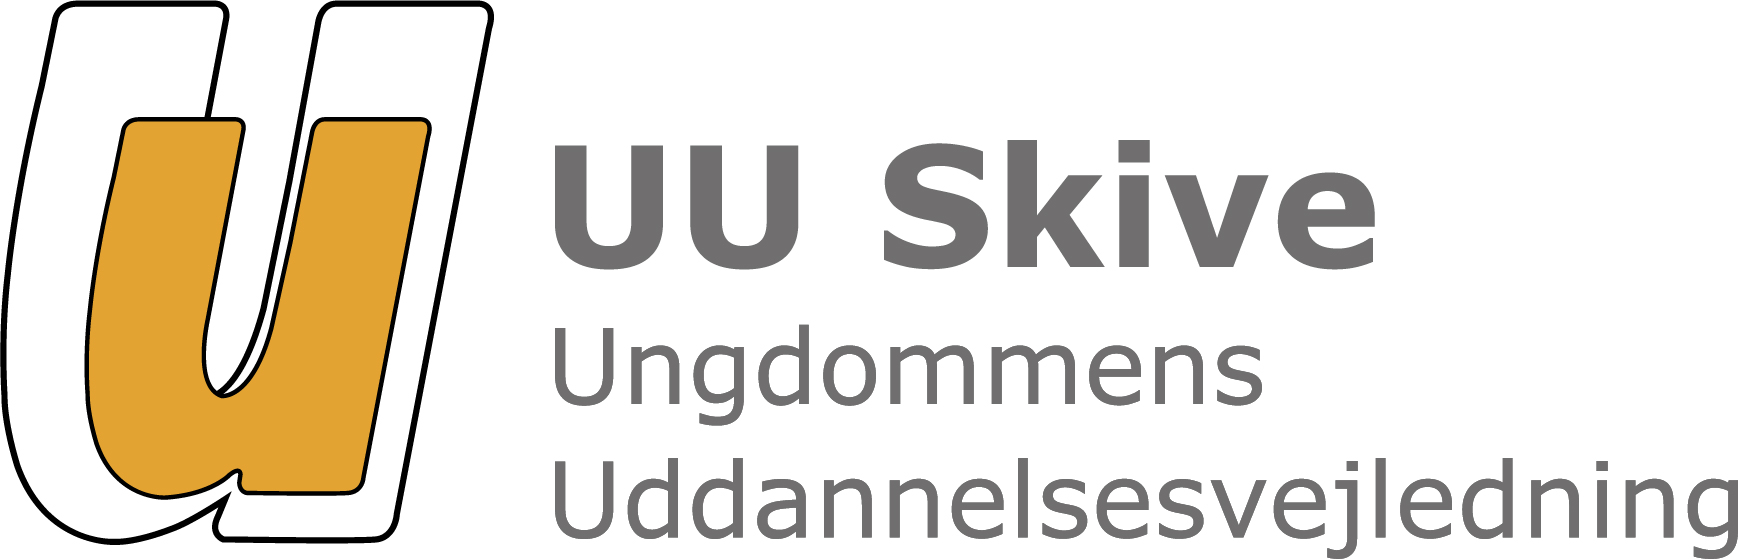 UU Skives logo - forside